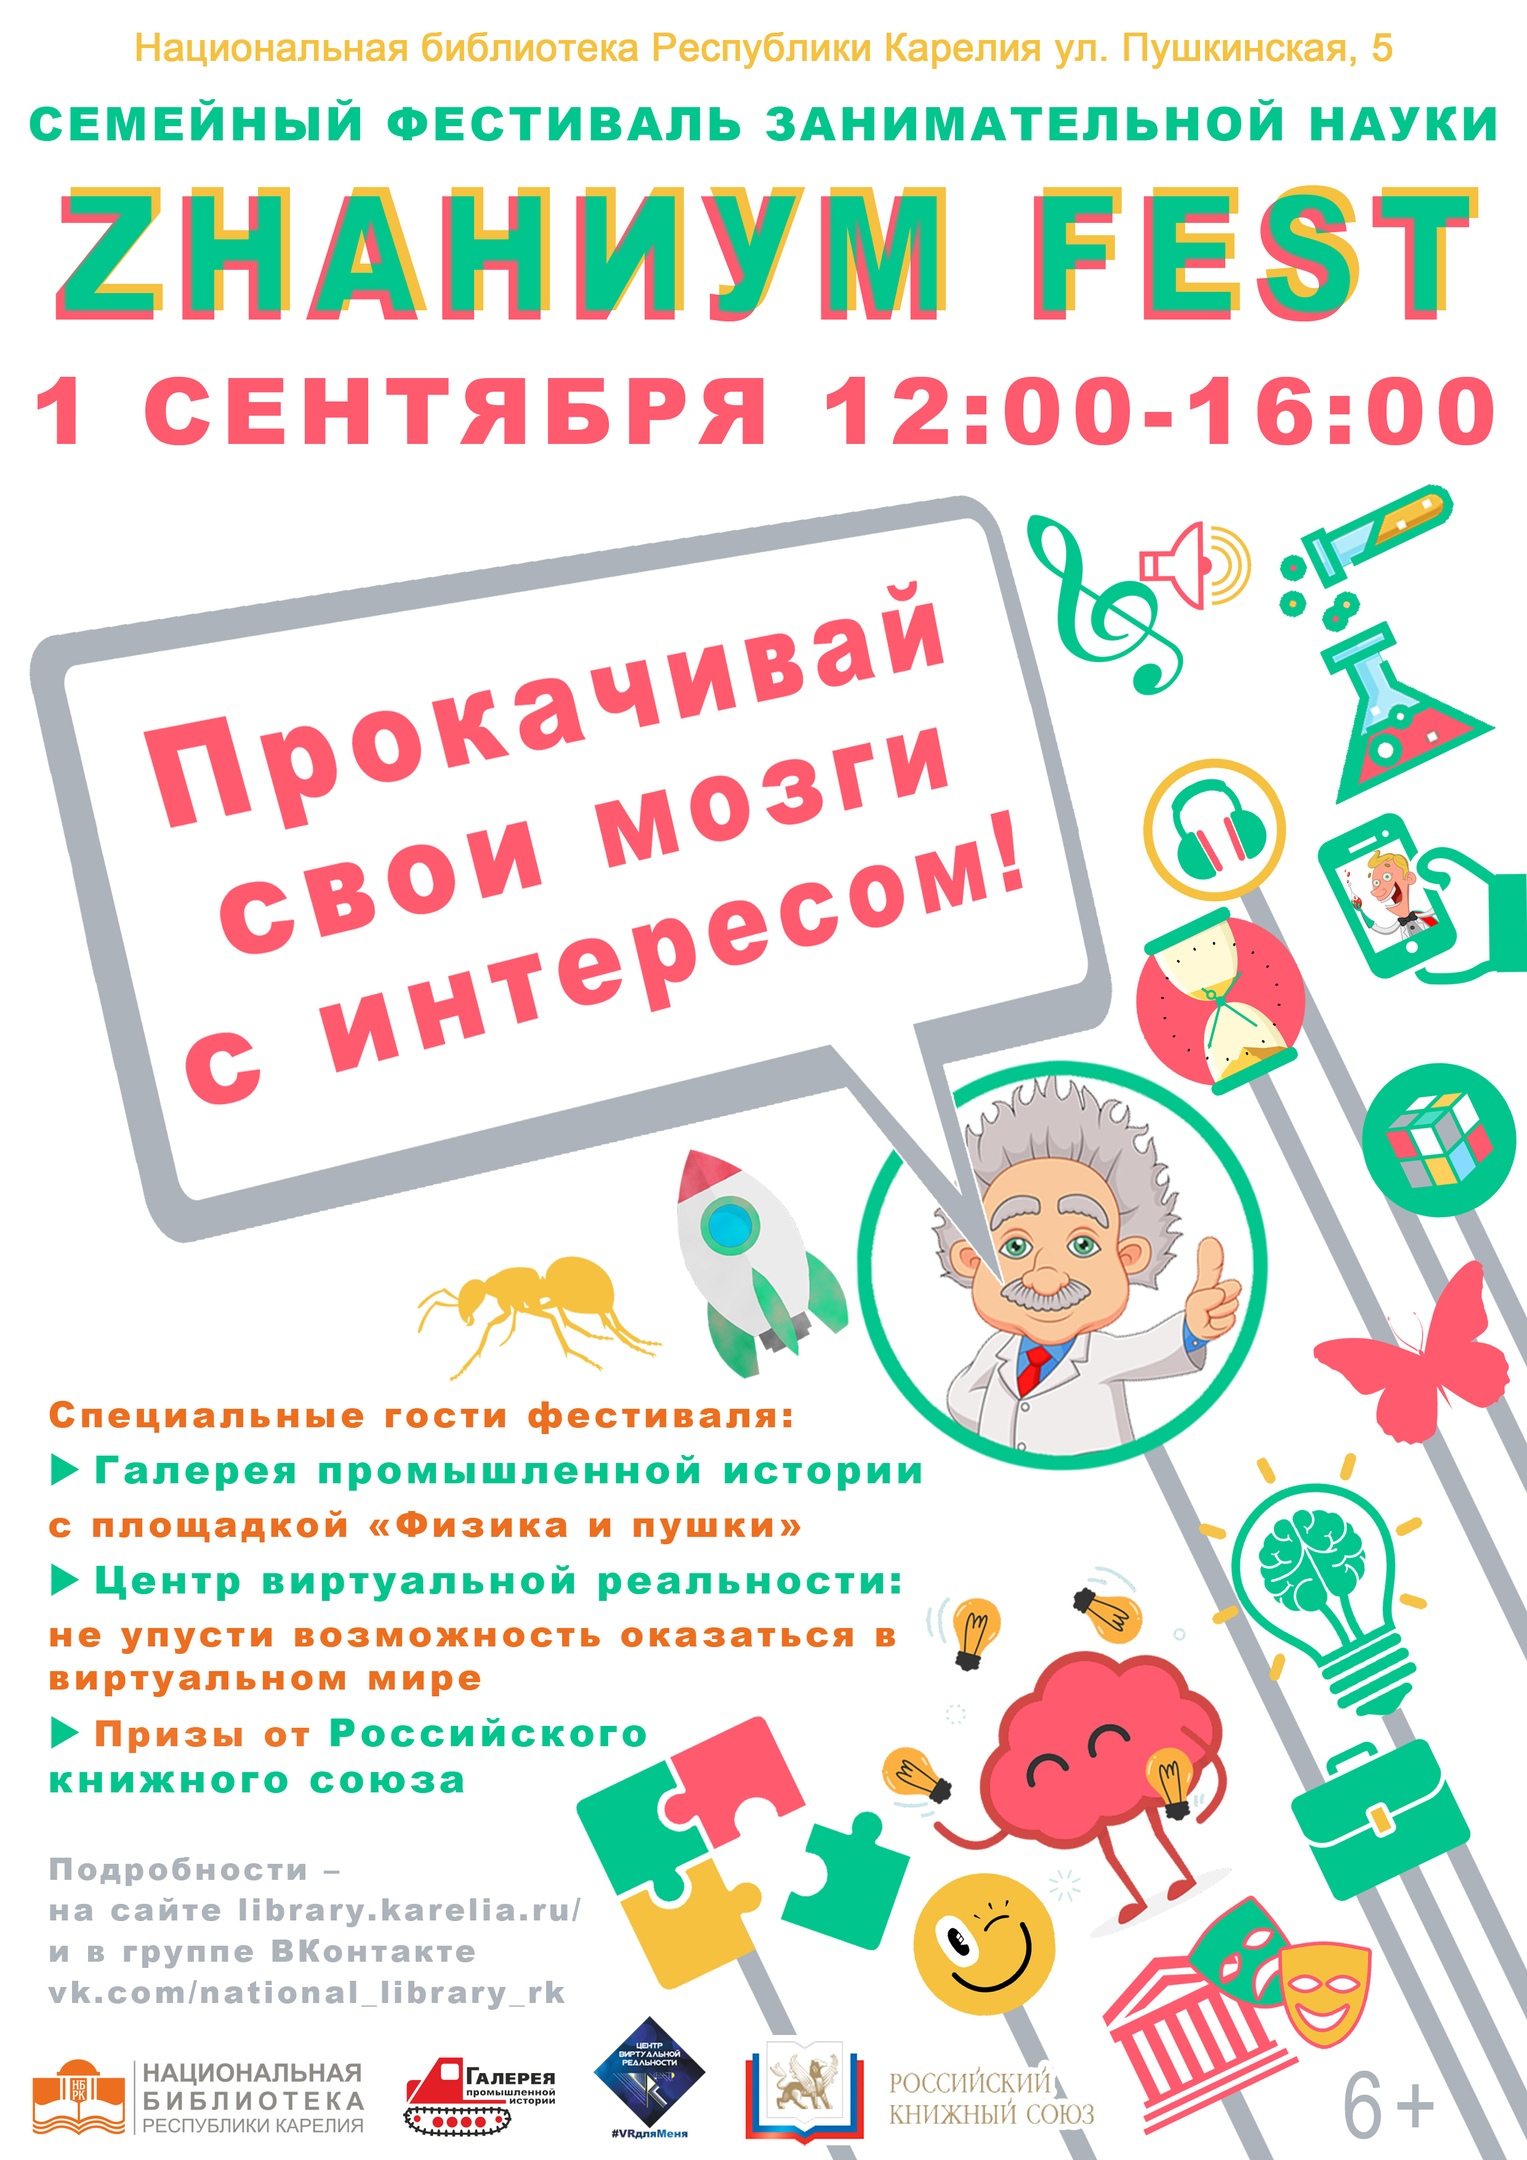 Фестиваль занимательной науки в Национальной библиотеке Карелии